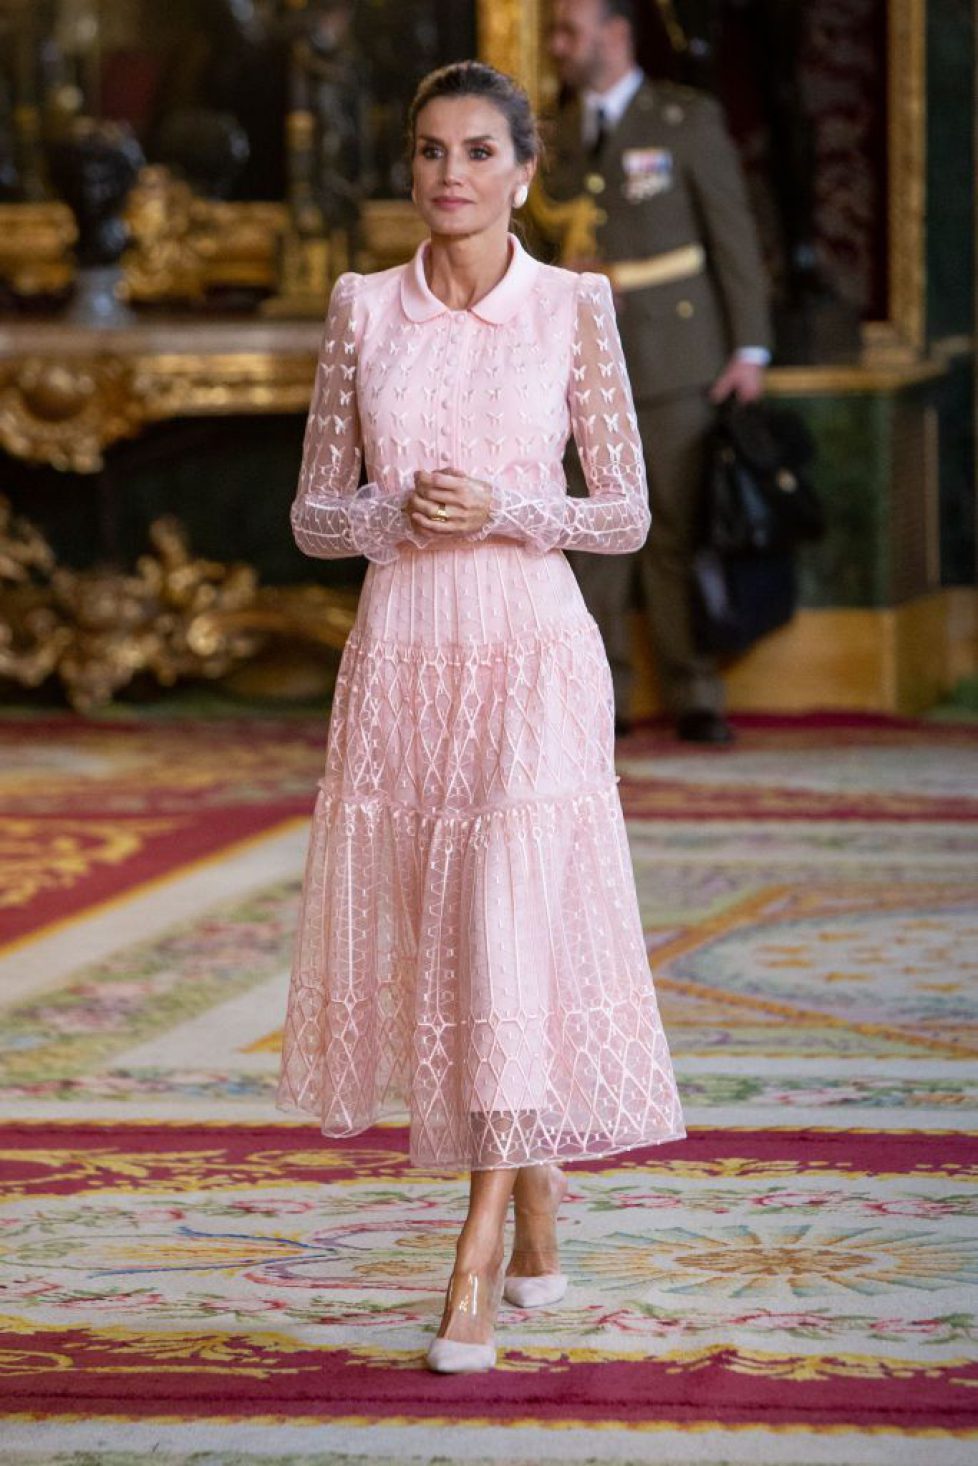 La reine Letizia dans une robe très courte : un look Barbie pour